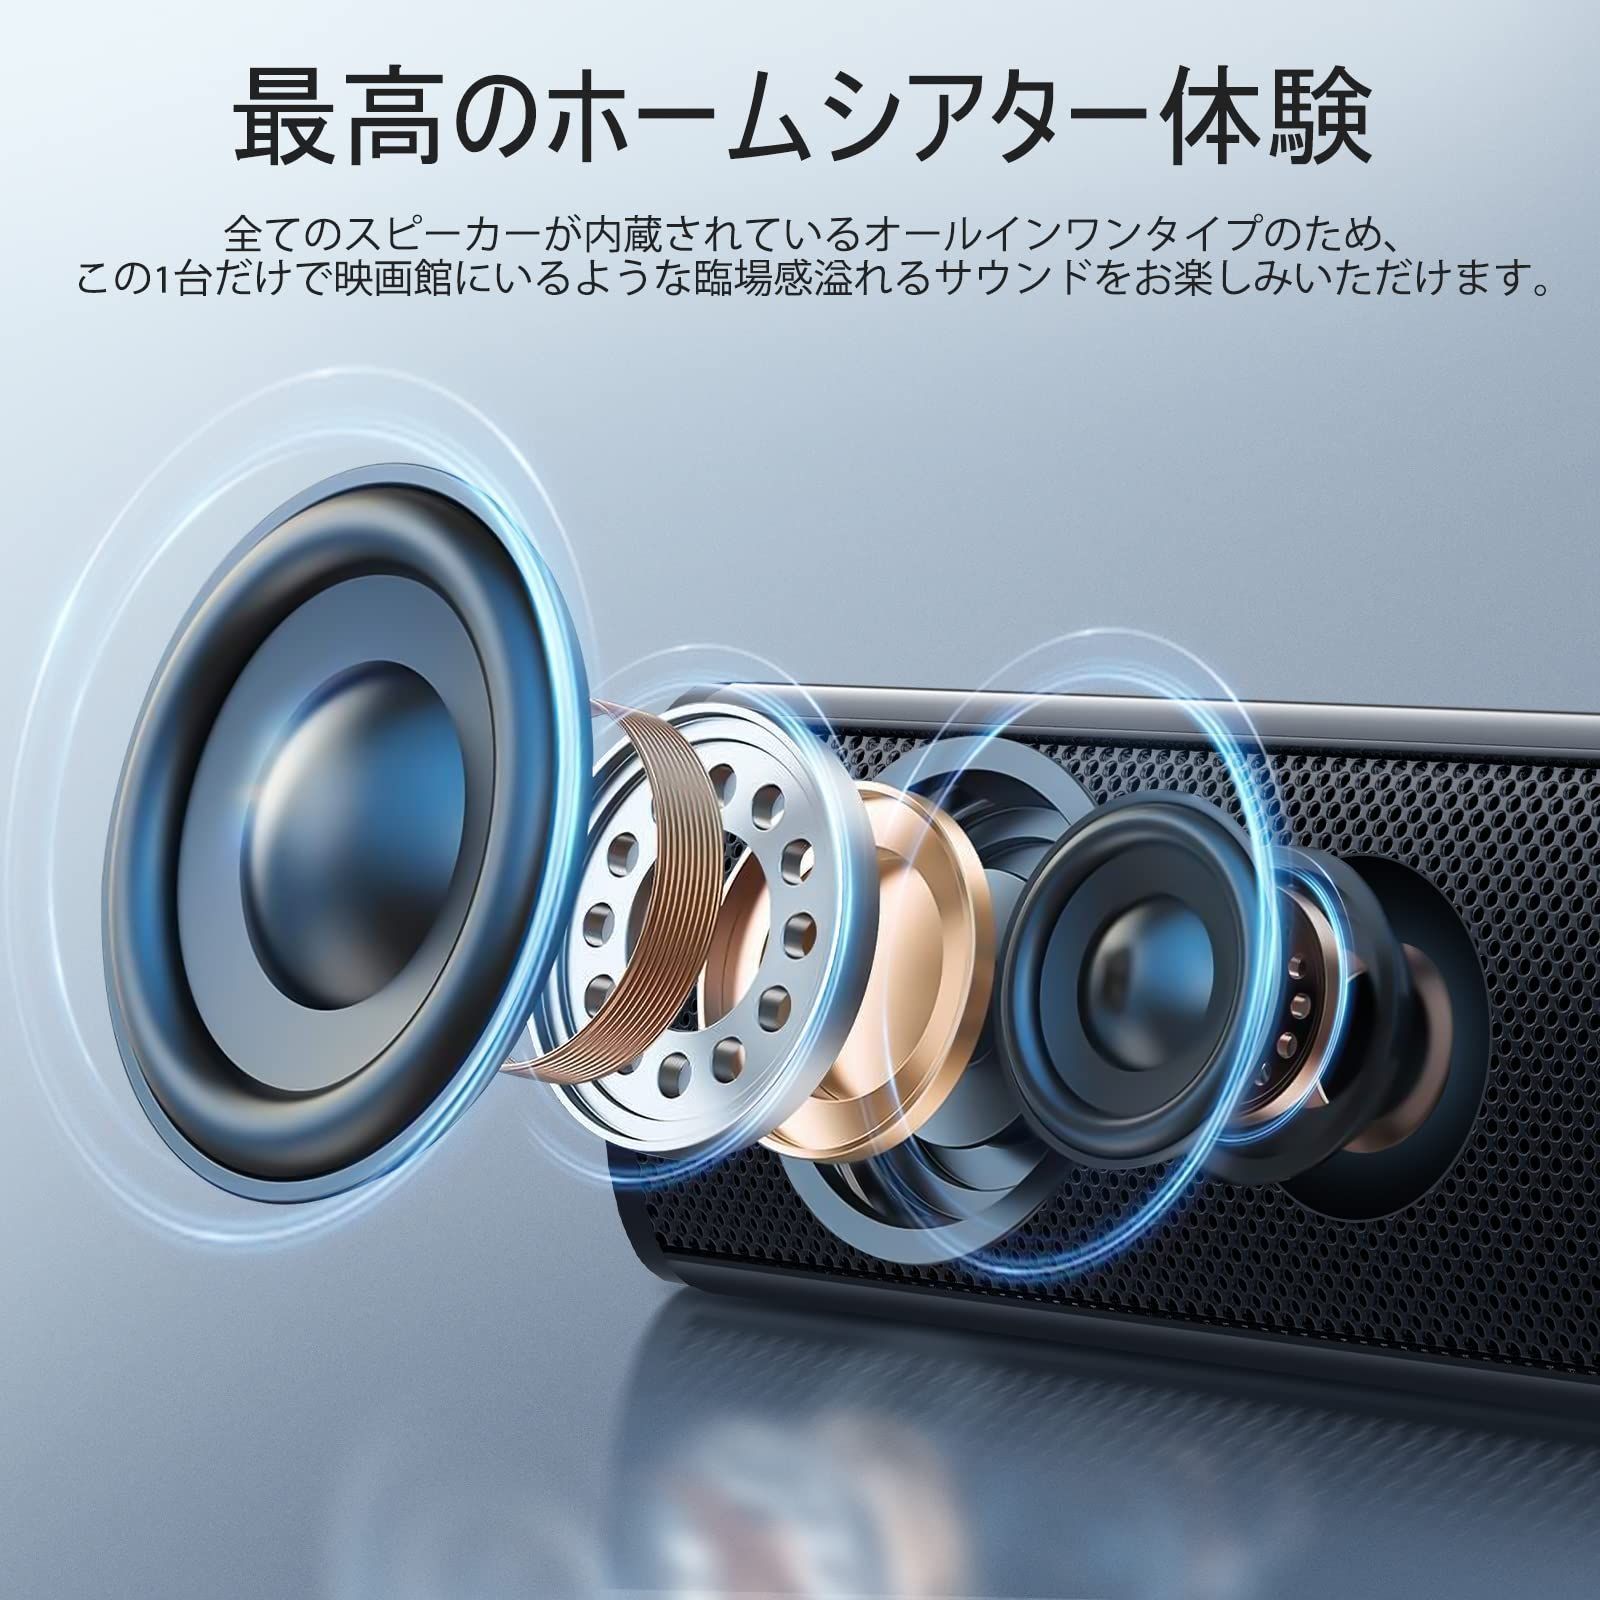 高性能高音質 スピーカー 3d音声 リモコン付き - オーディオ機器